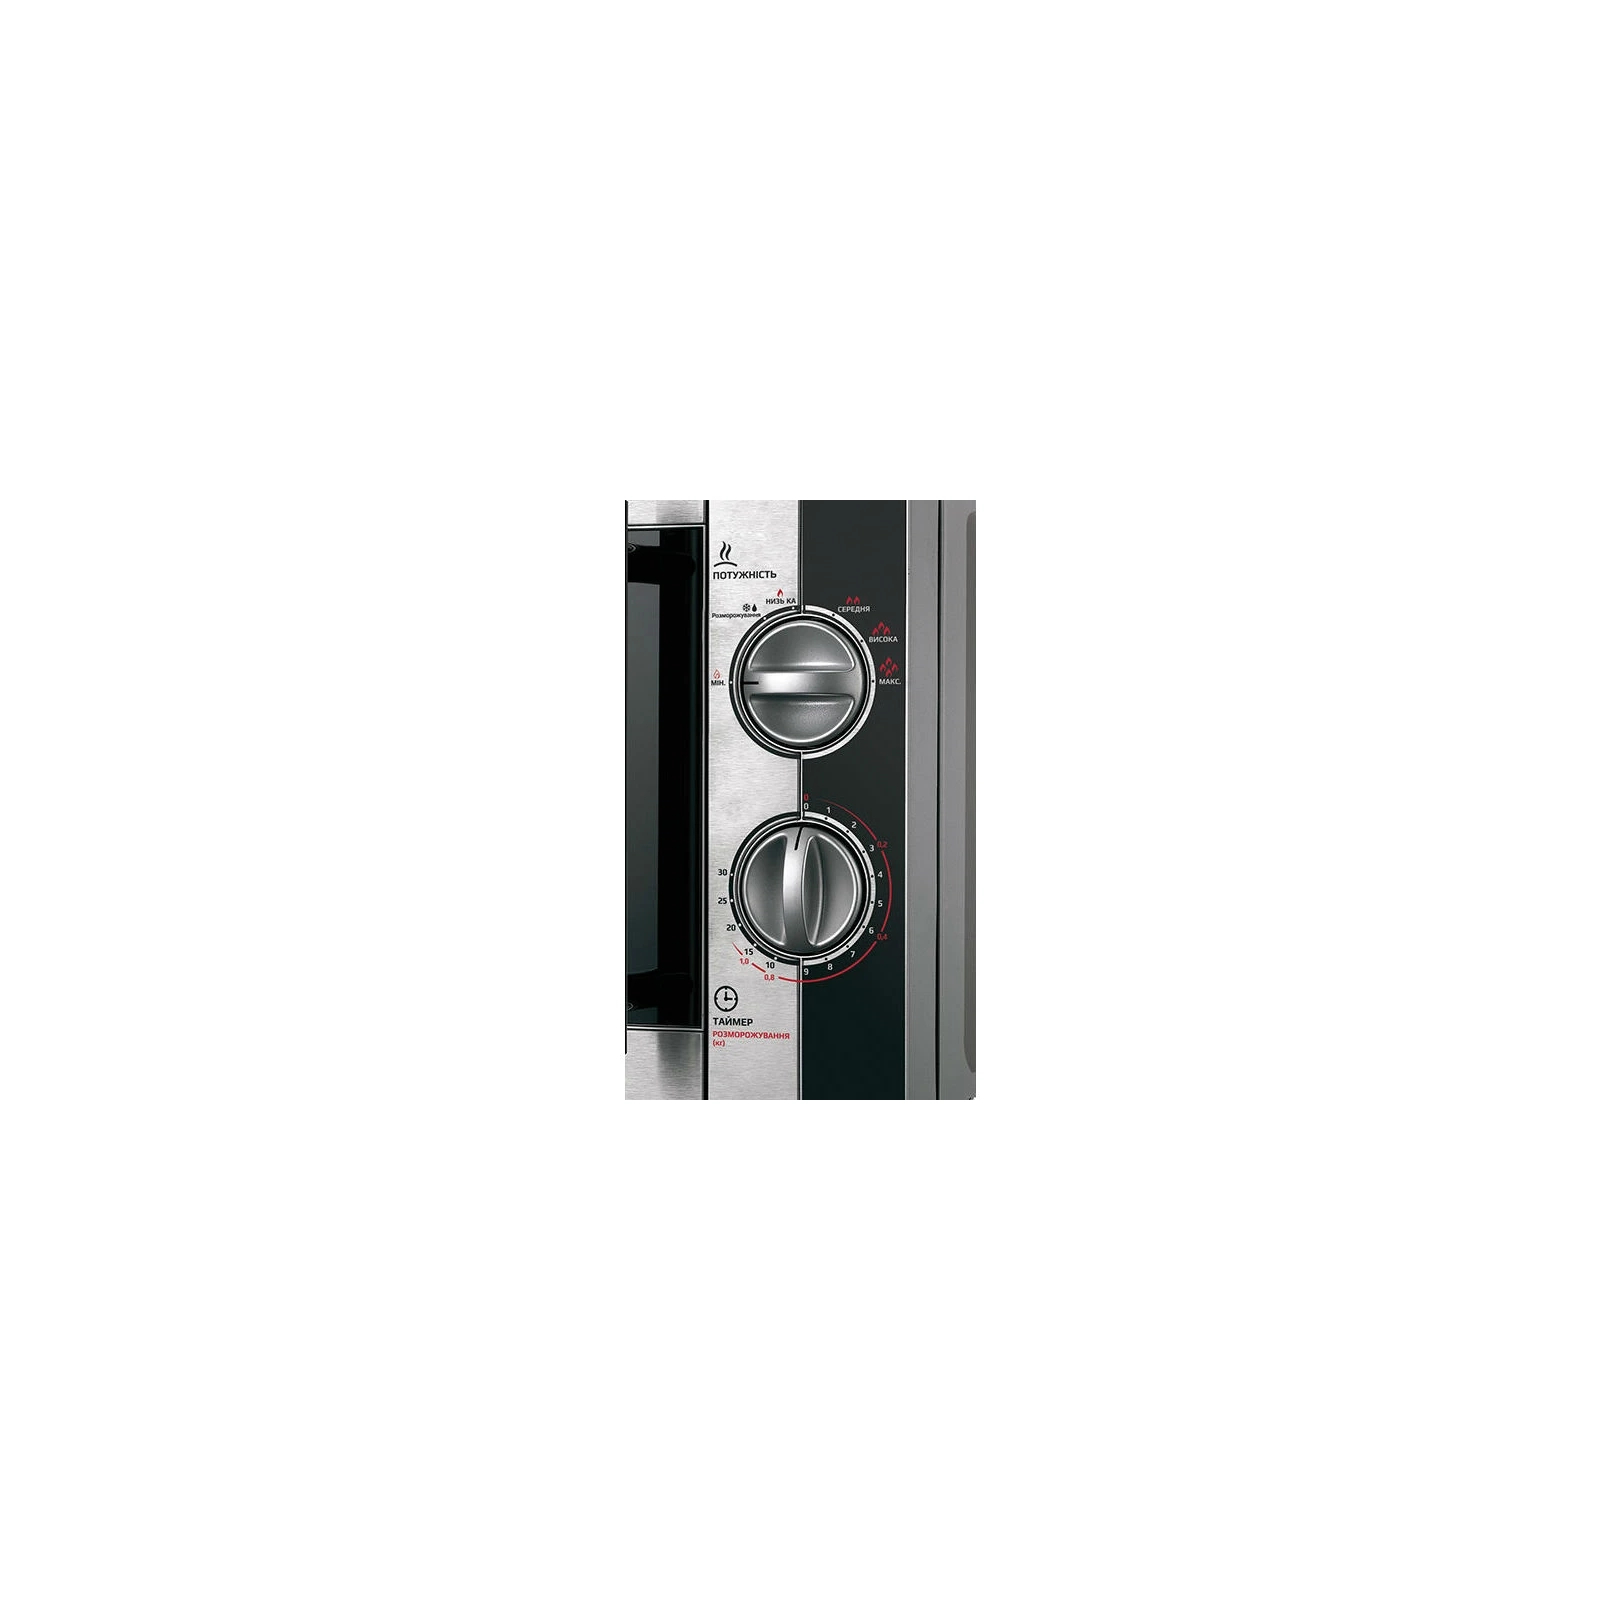 Микроволновая печь Liberton LMW-2078M inox black white изображение 4